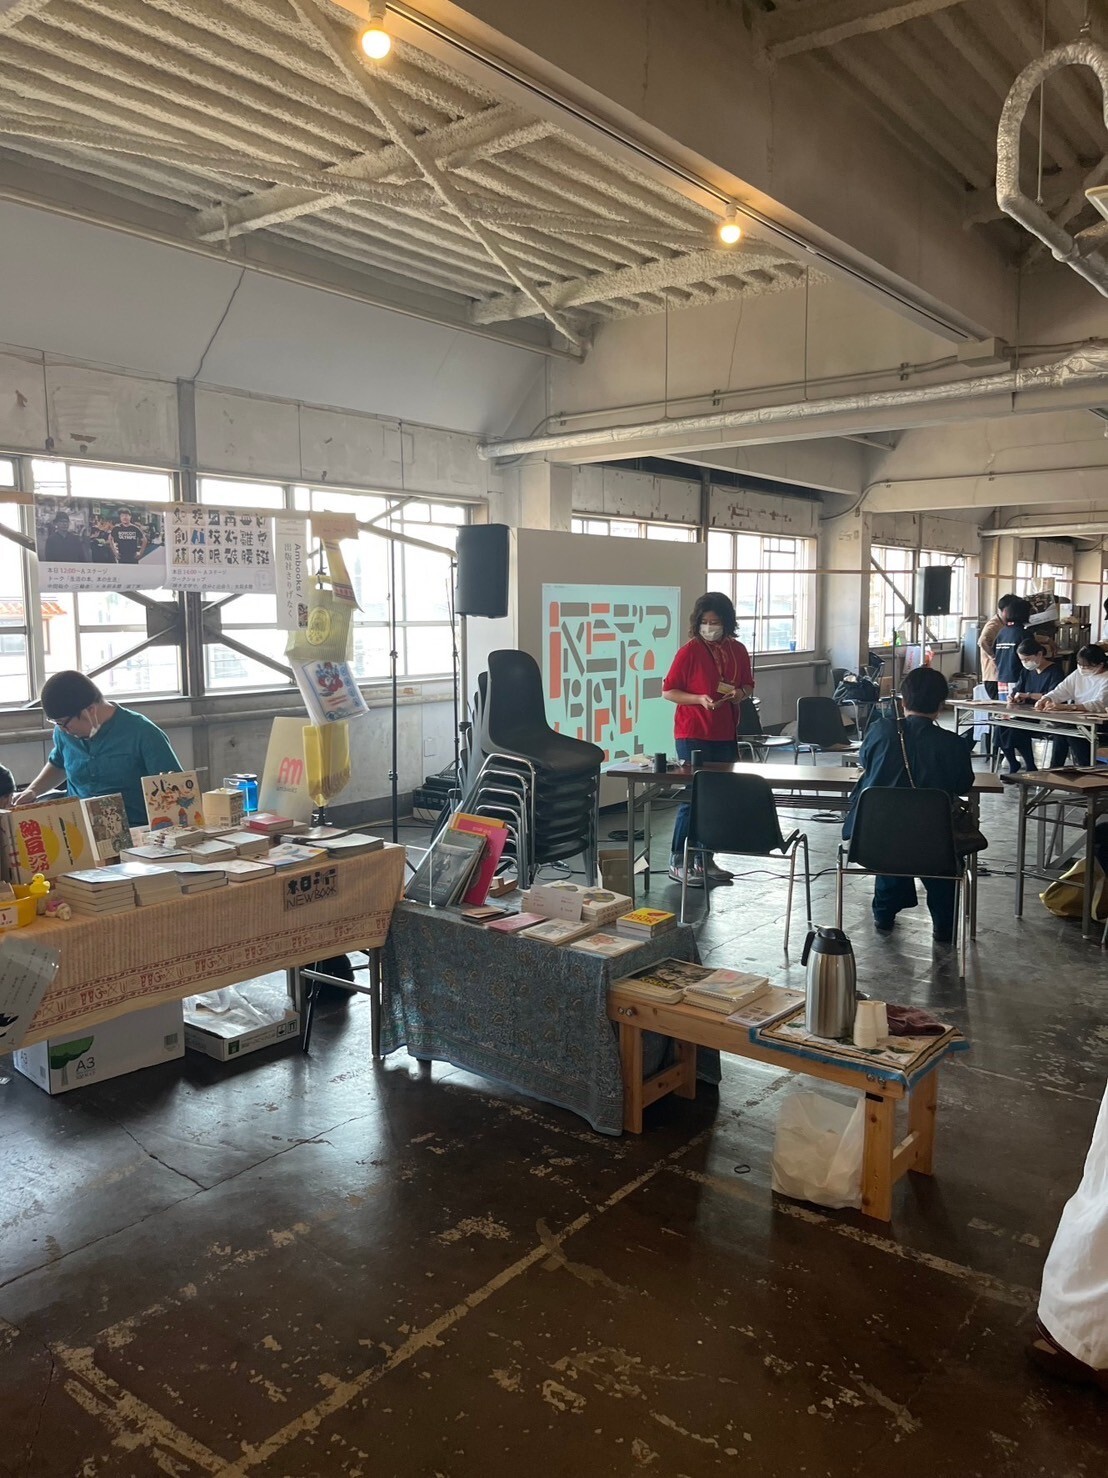 王茹羚在日本的學習活動分享01-參觀大阪藝術市集（autumn&asia book market),有許多手工藝的特殊商品與藝術家講座。